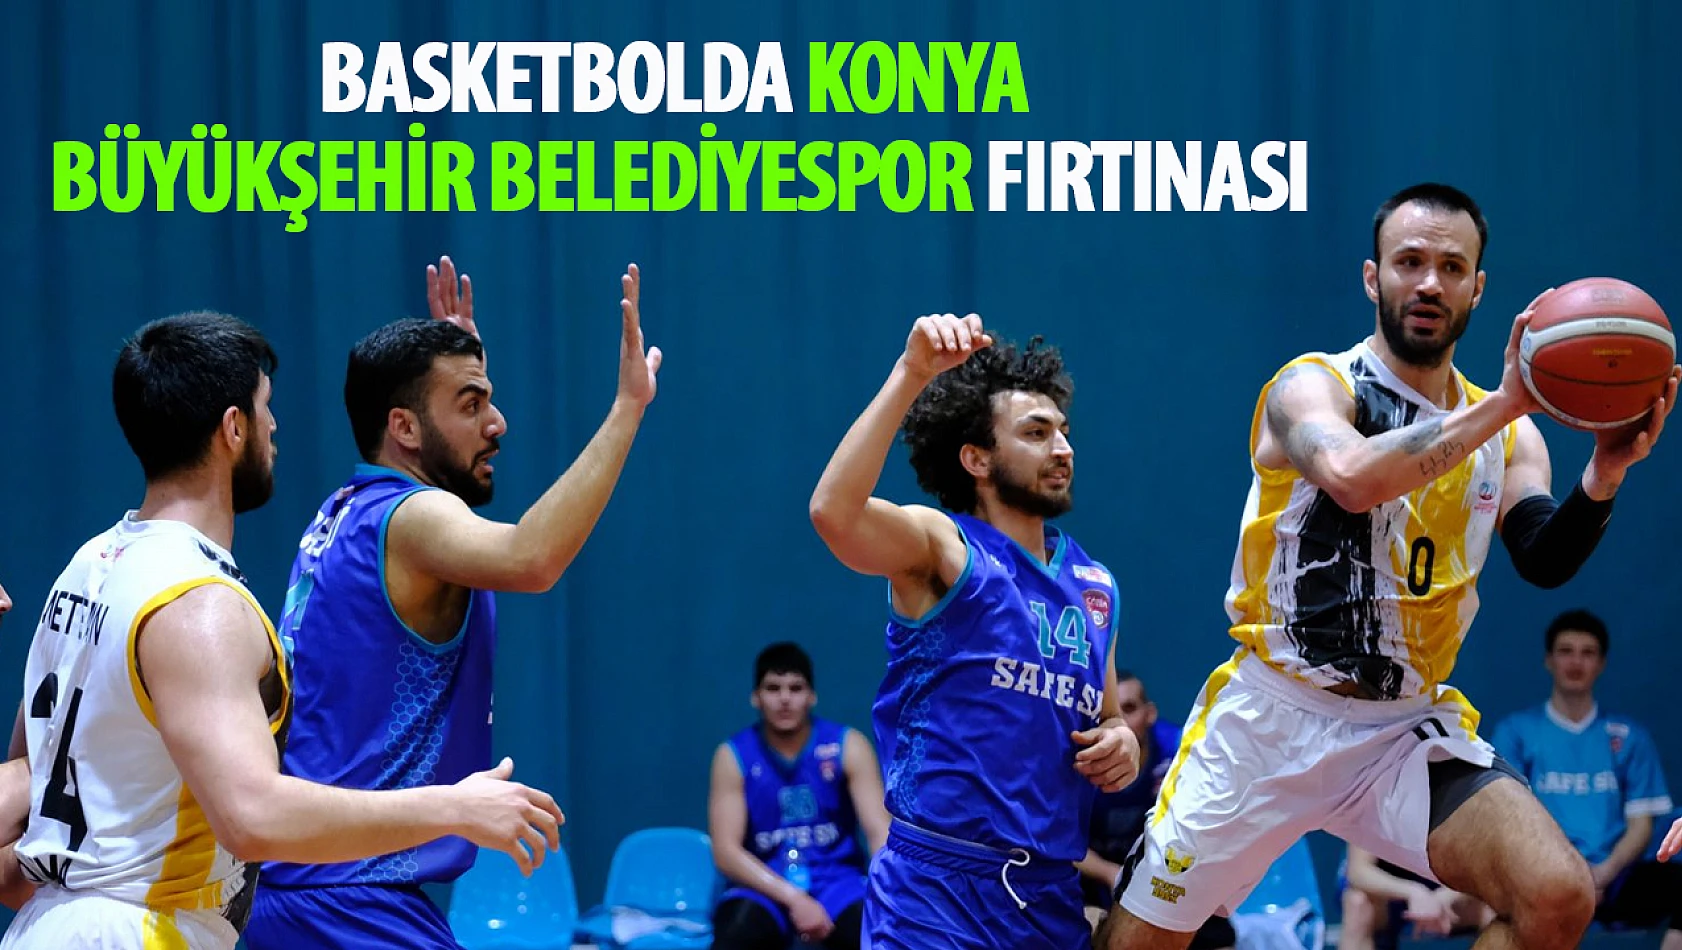 Basketbolda Konya Büyükşehir Belediyespor Fırtınası